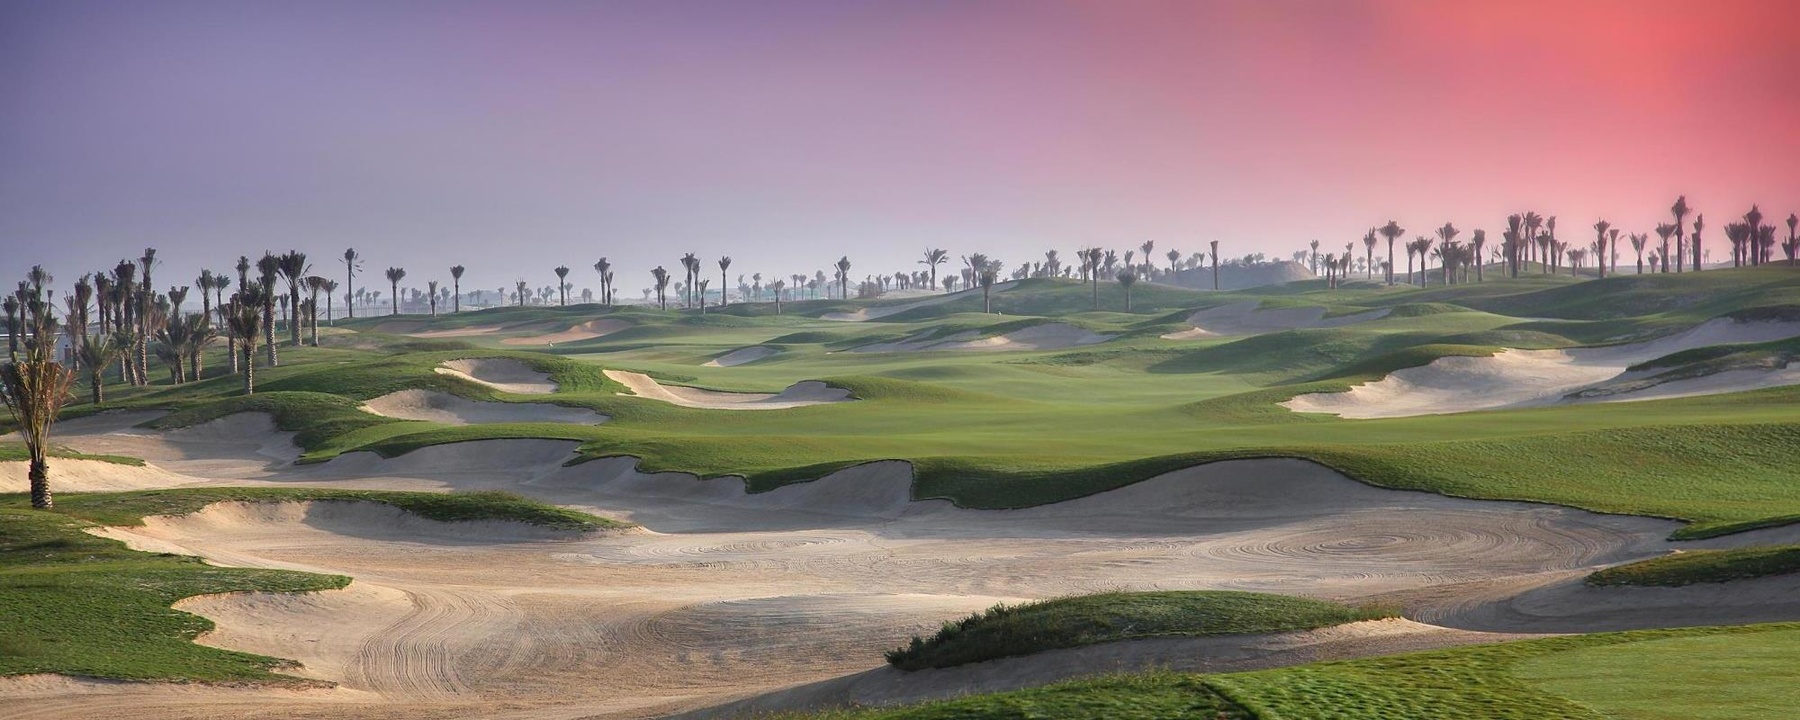 SaadiyatBeach Golf Club, Abu Dhabi